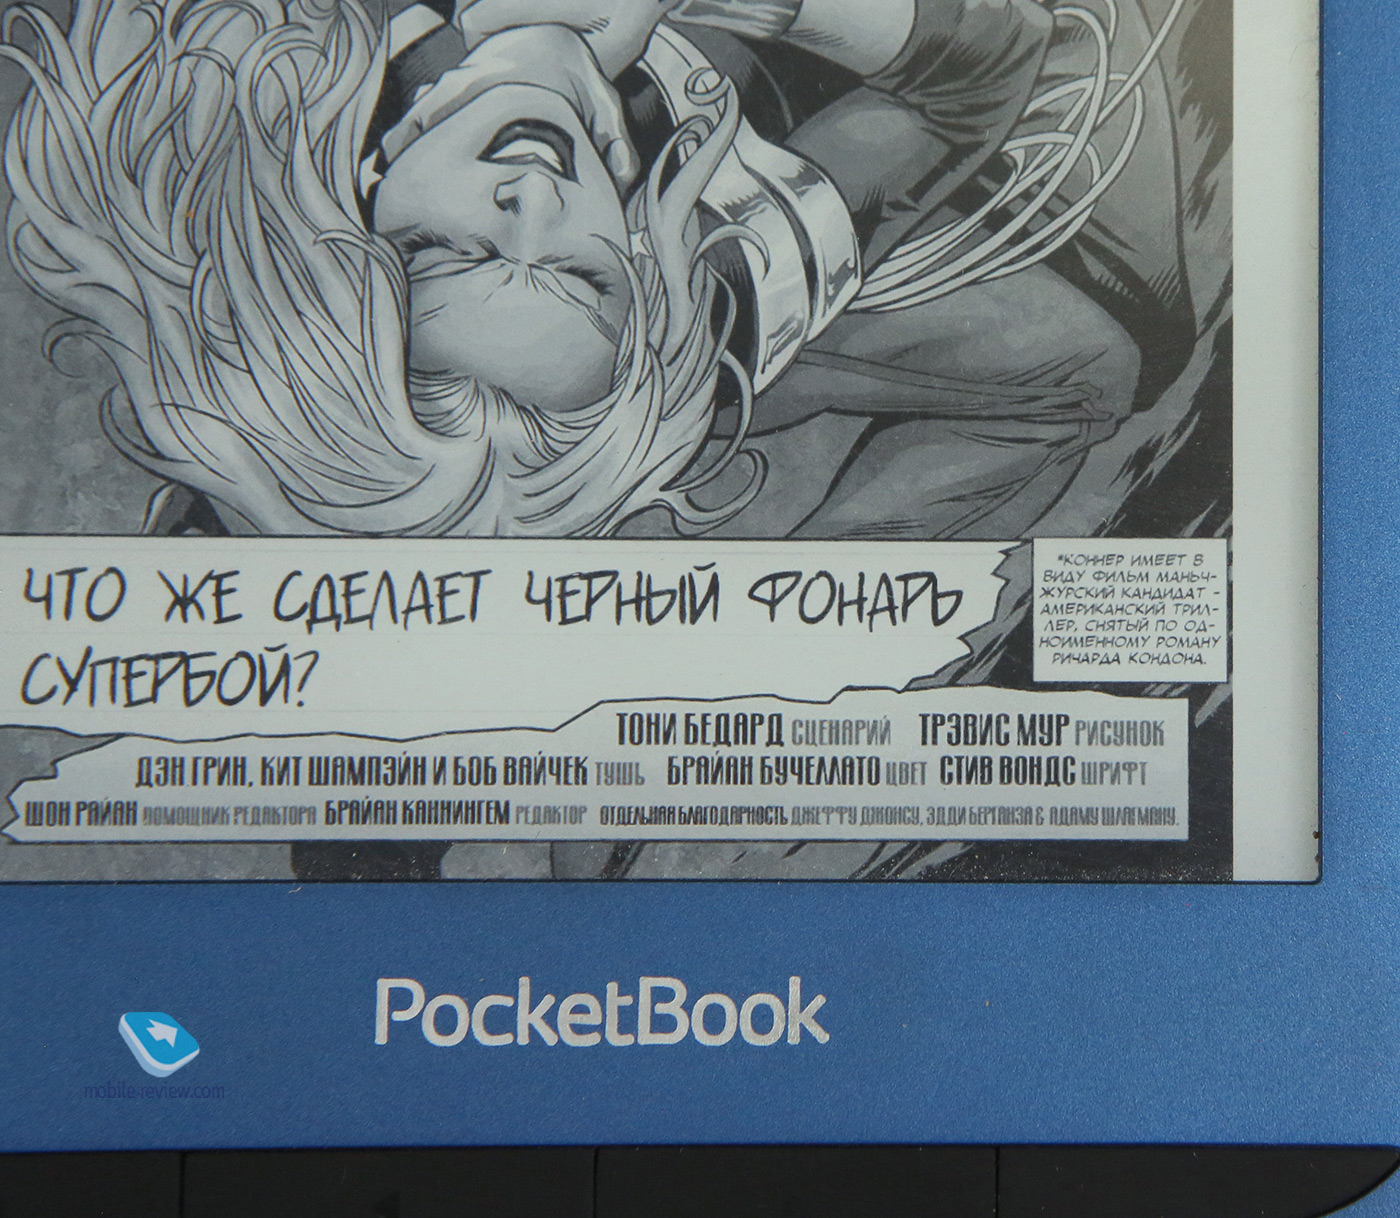 PocketBook 633 Color e-book review